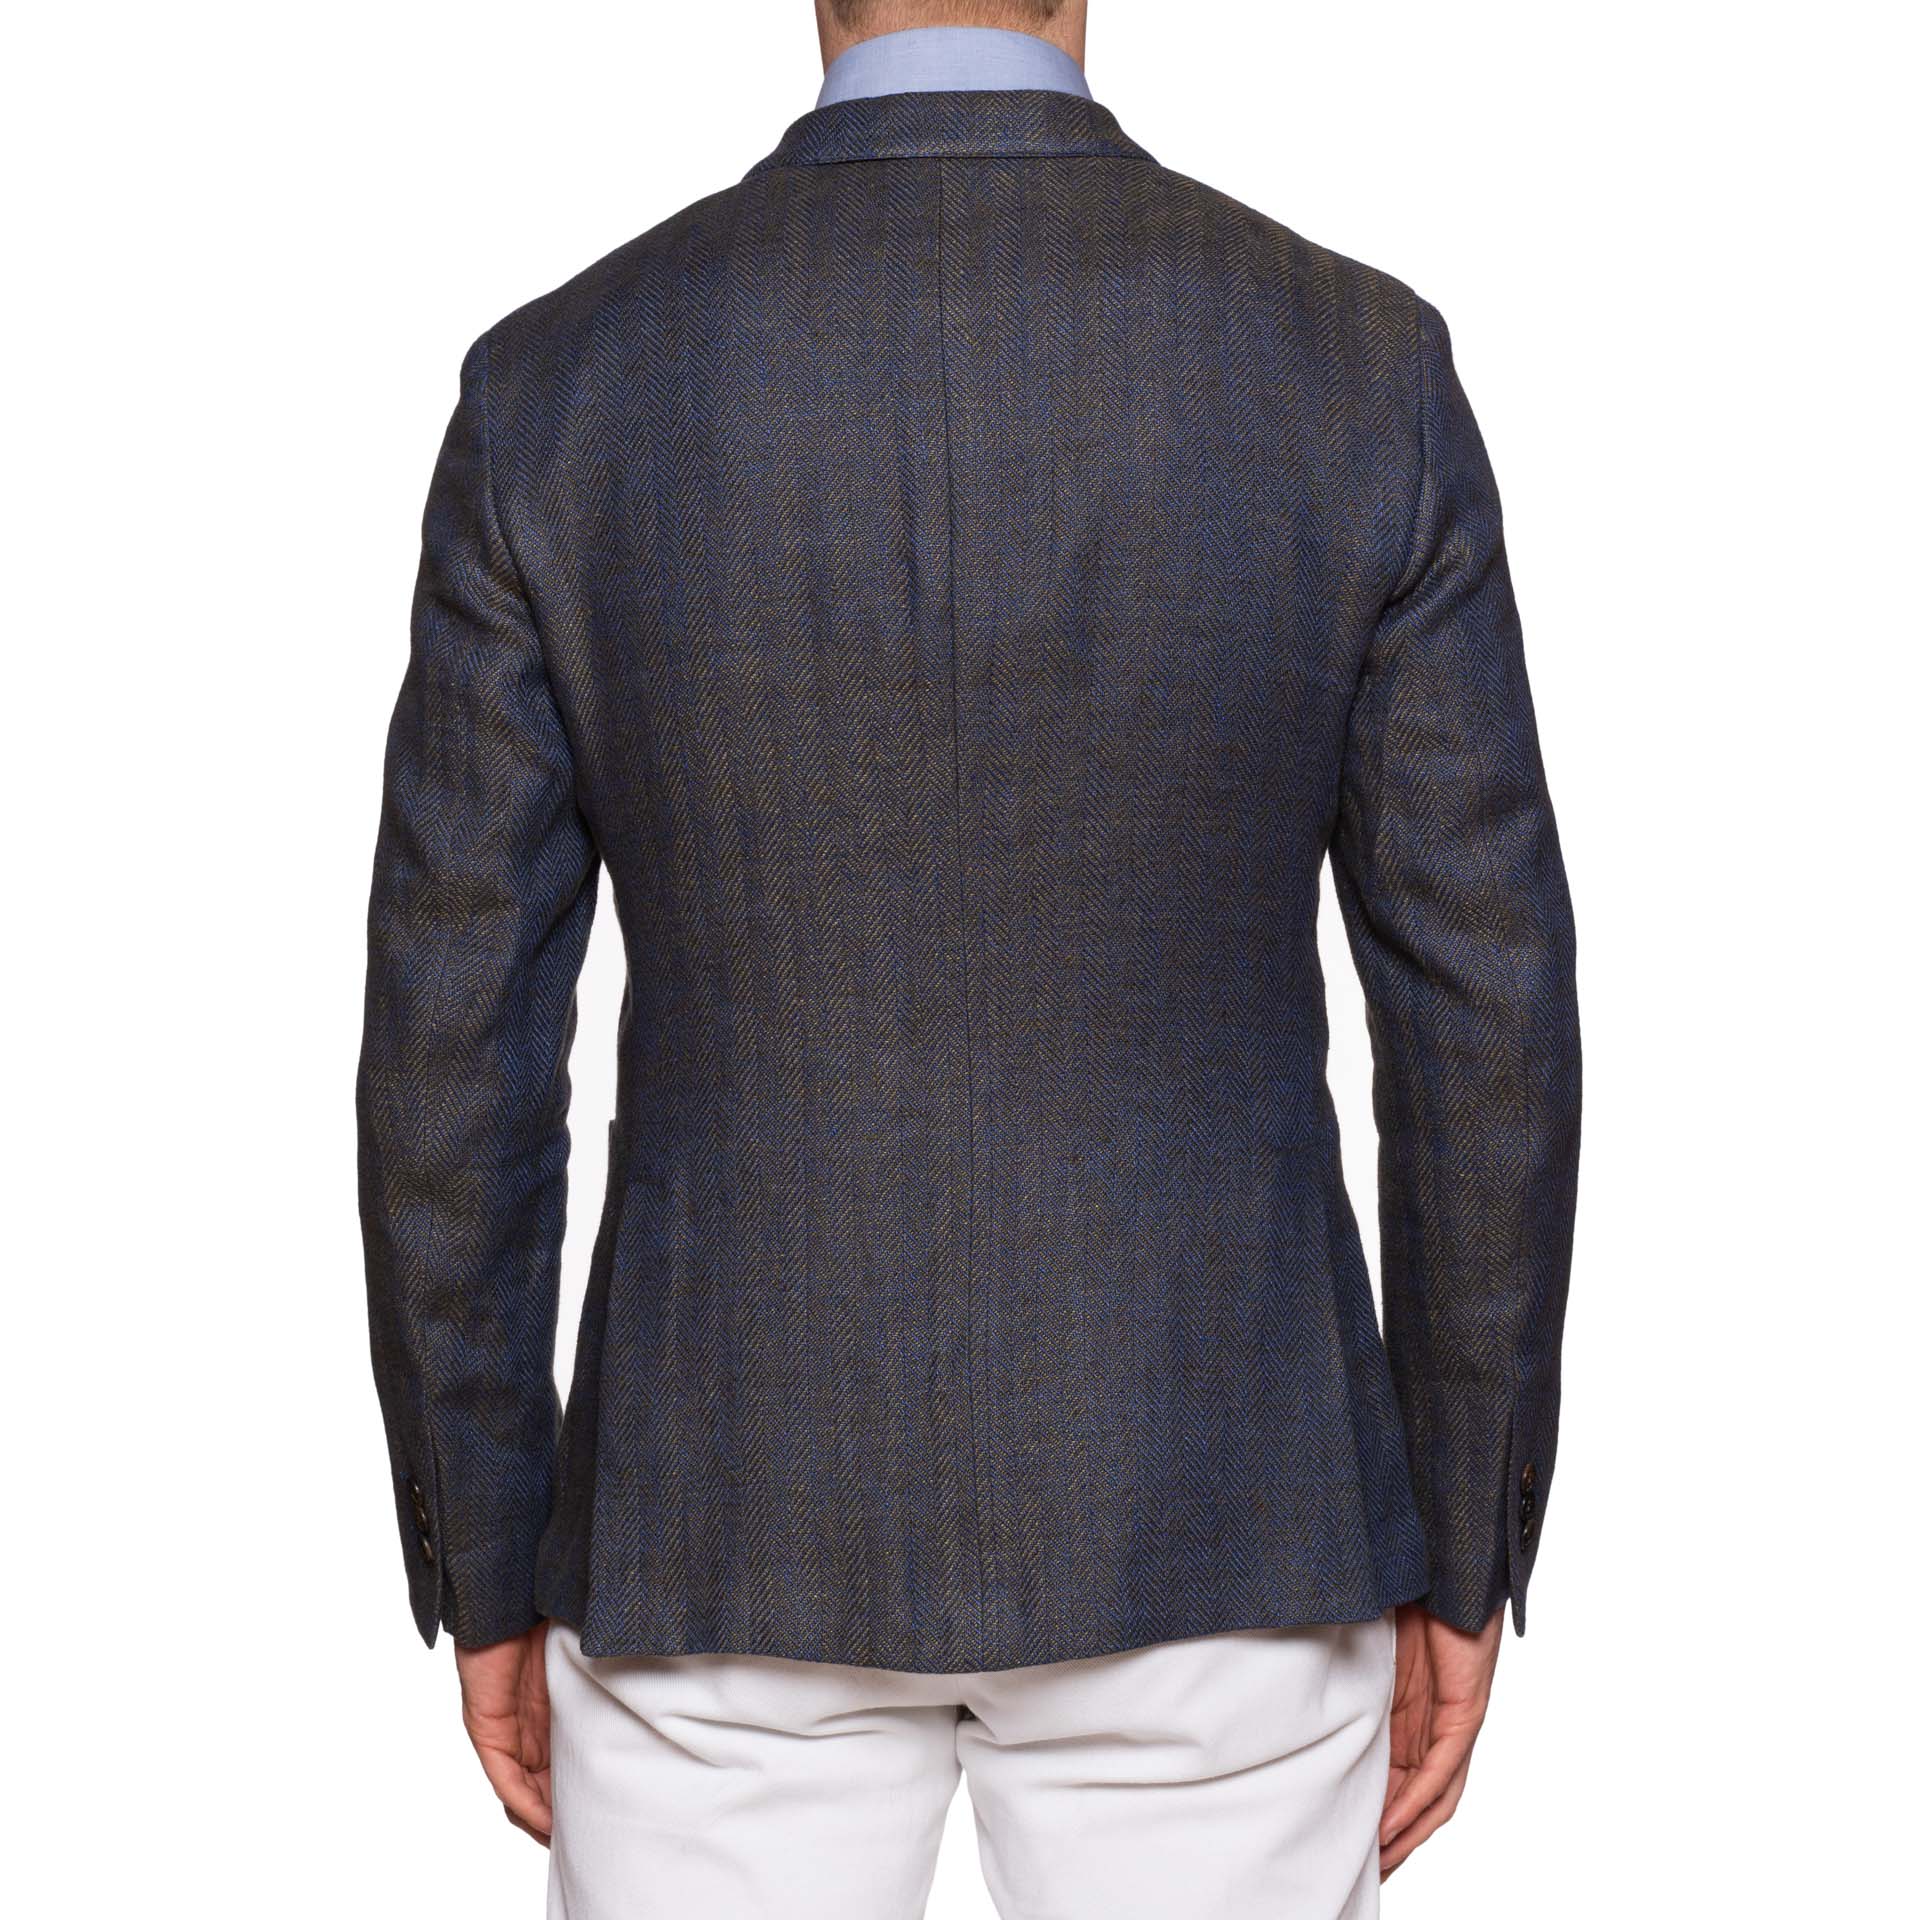 BOGLIOLI Milano "Dover" Blue Herringbone Linen-Cotton Unlined Jacket 48 NEW 38 BOGLIOLI